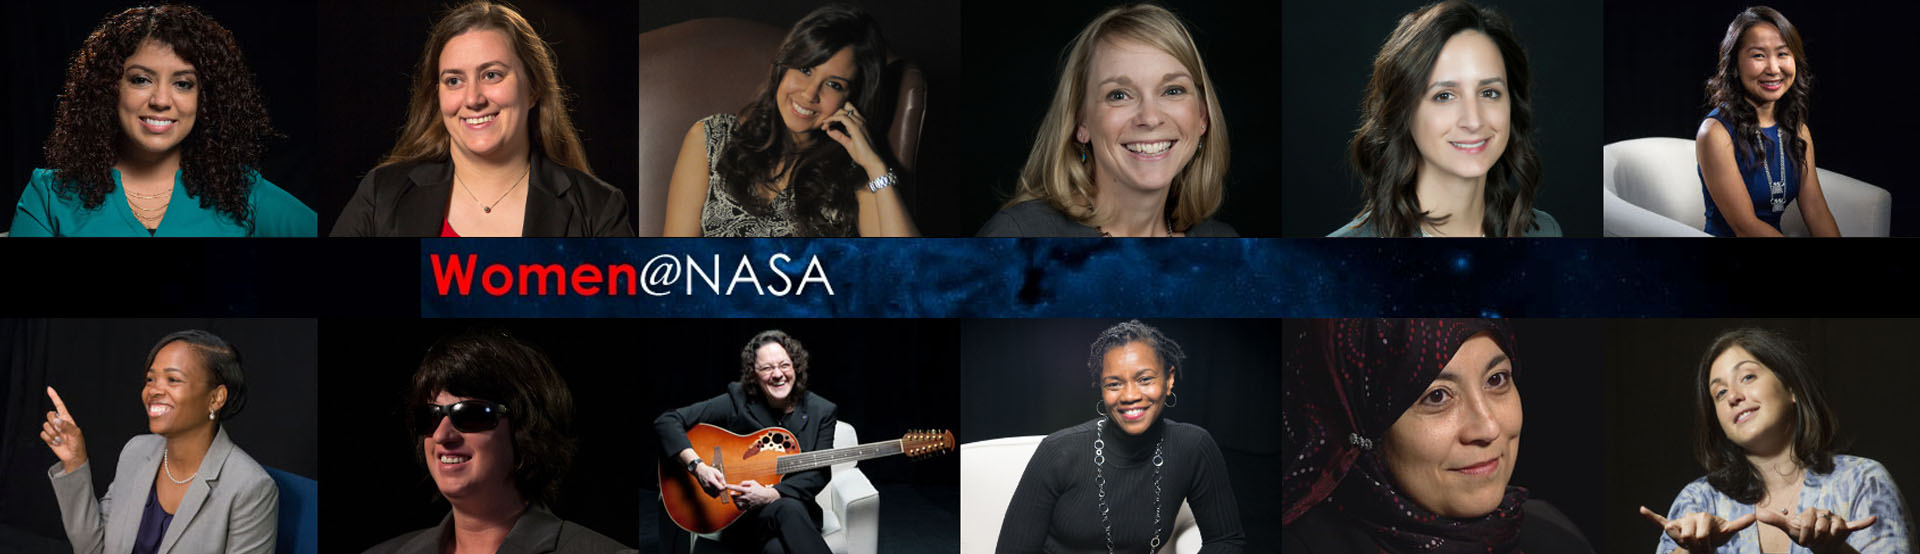 Women@NASA